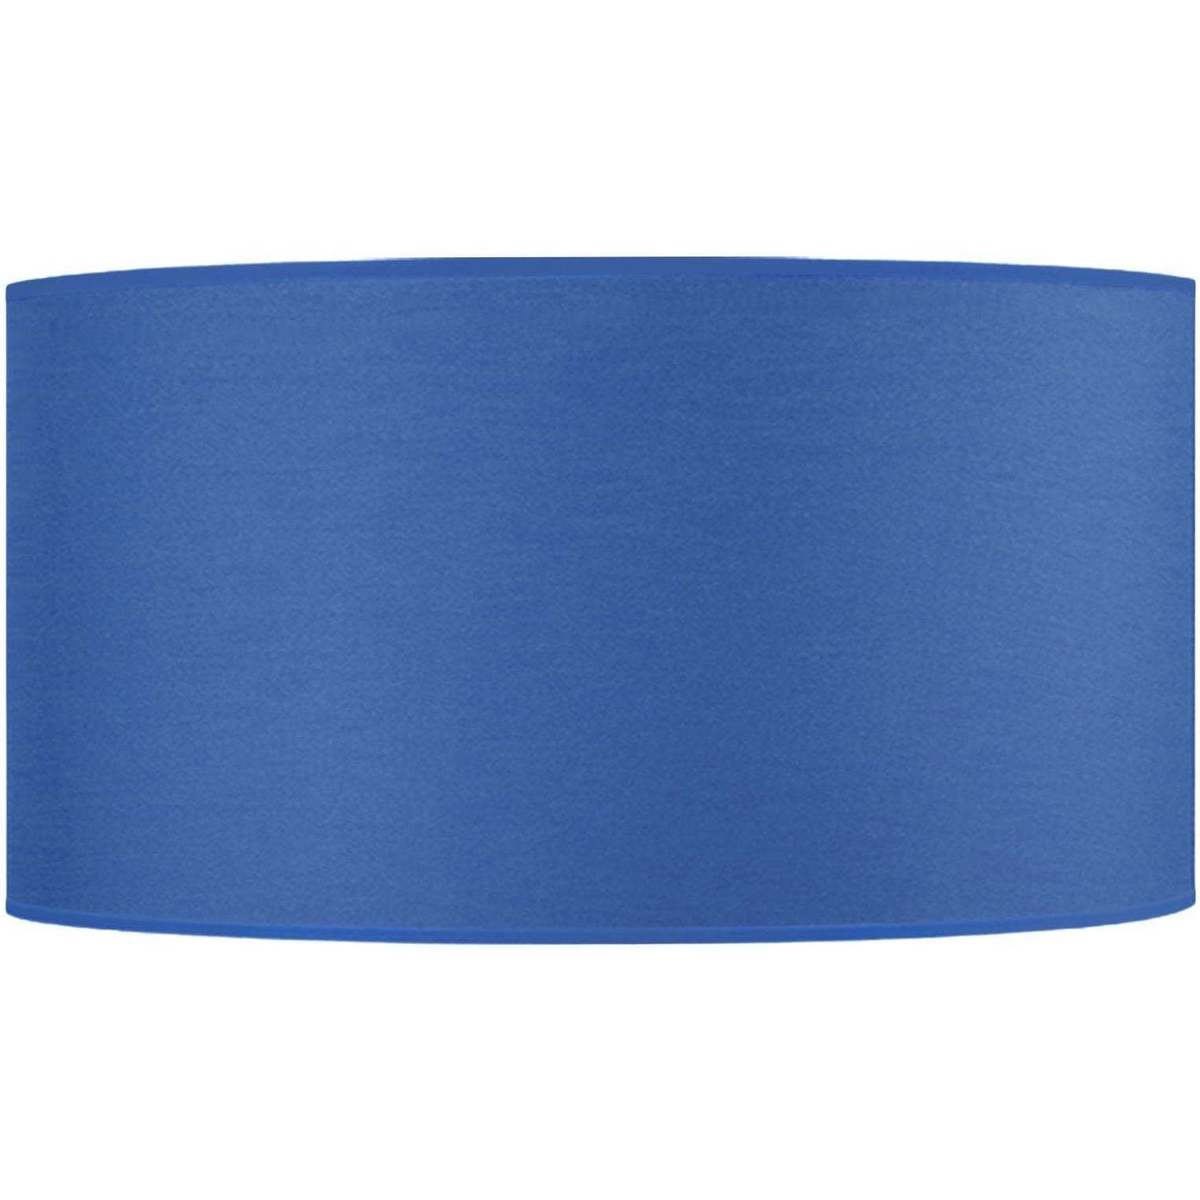 Maison & Déco Emporio Armani E Abat-jour cylindrique tissu bleu Bleu